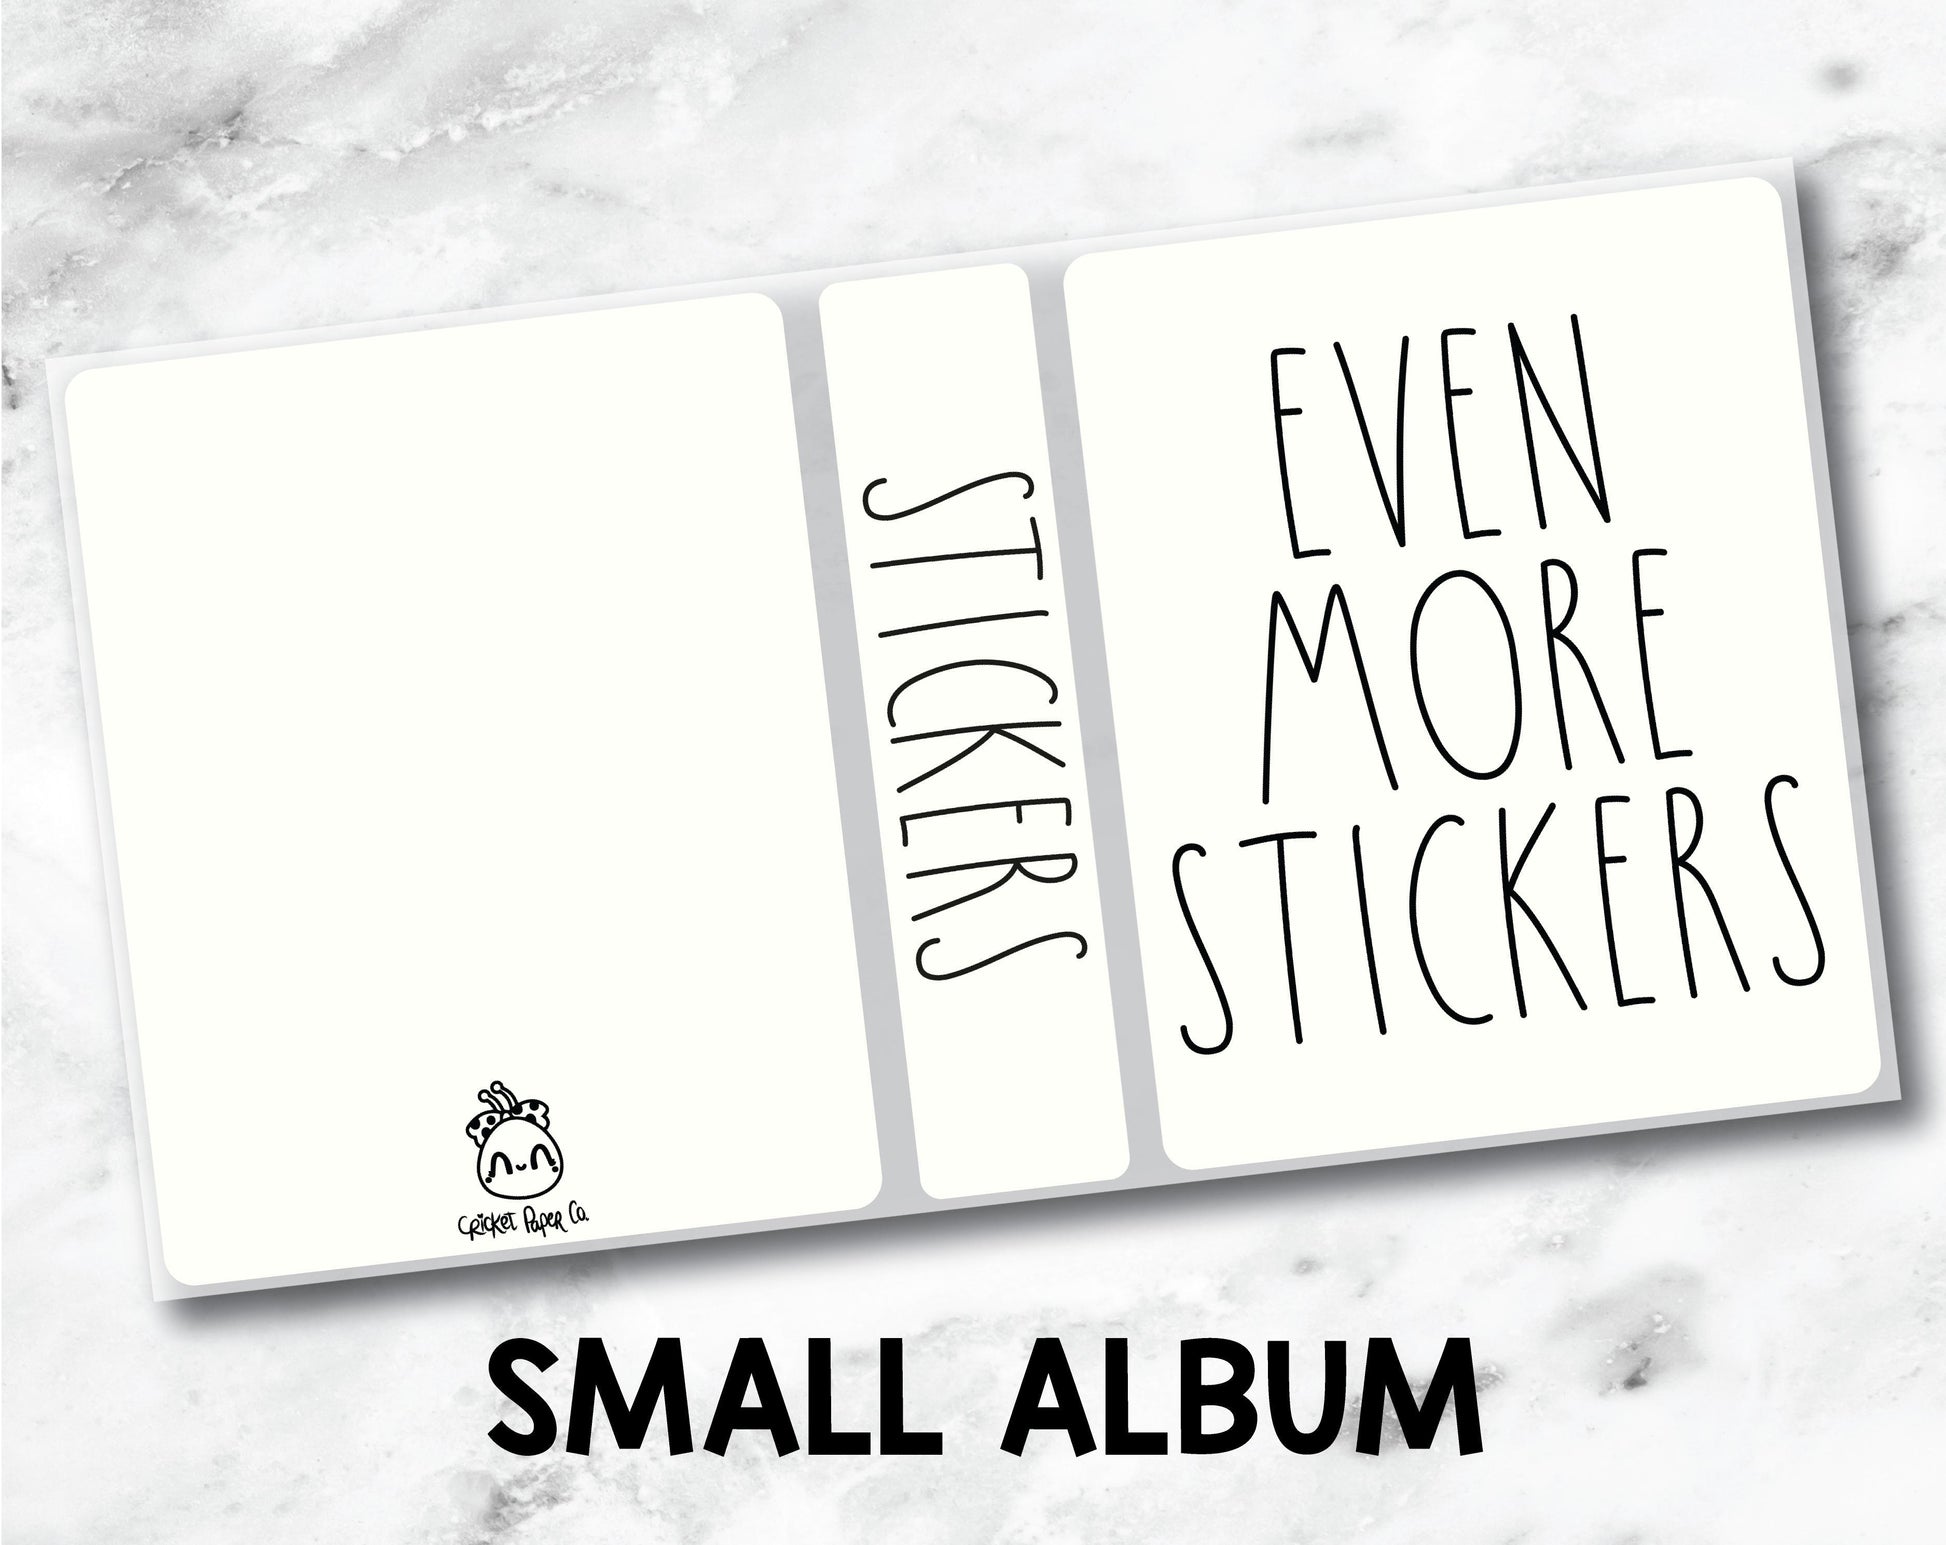 Small Sticker Storage Album - Even More Stickers-Cricket Paper Co.